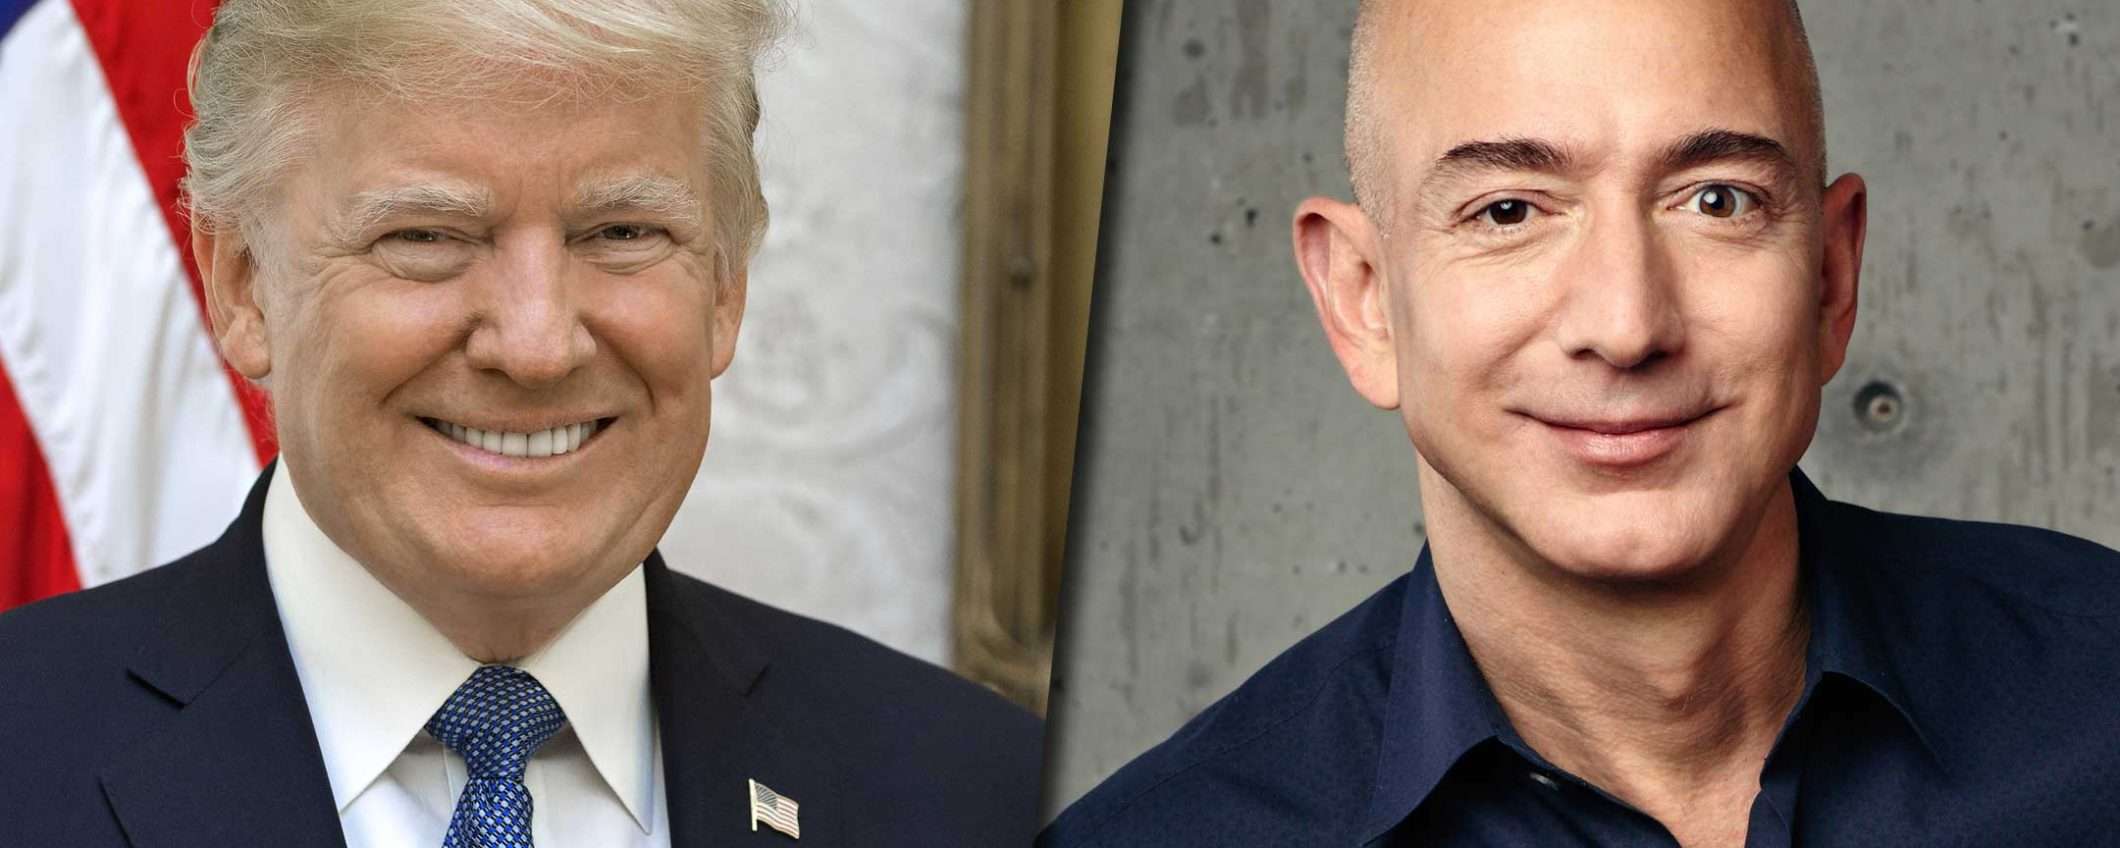 Donald Trump, Jeff Bezos e il JEDI sulla nuvola